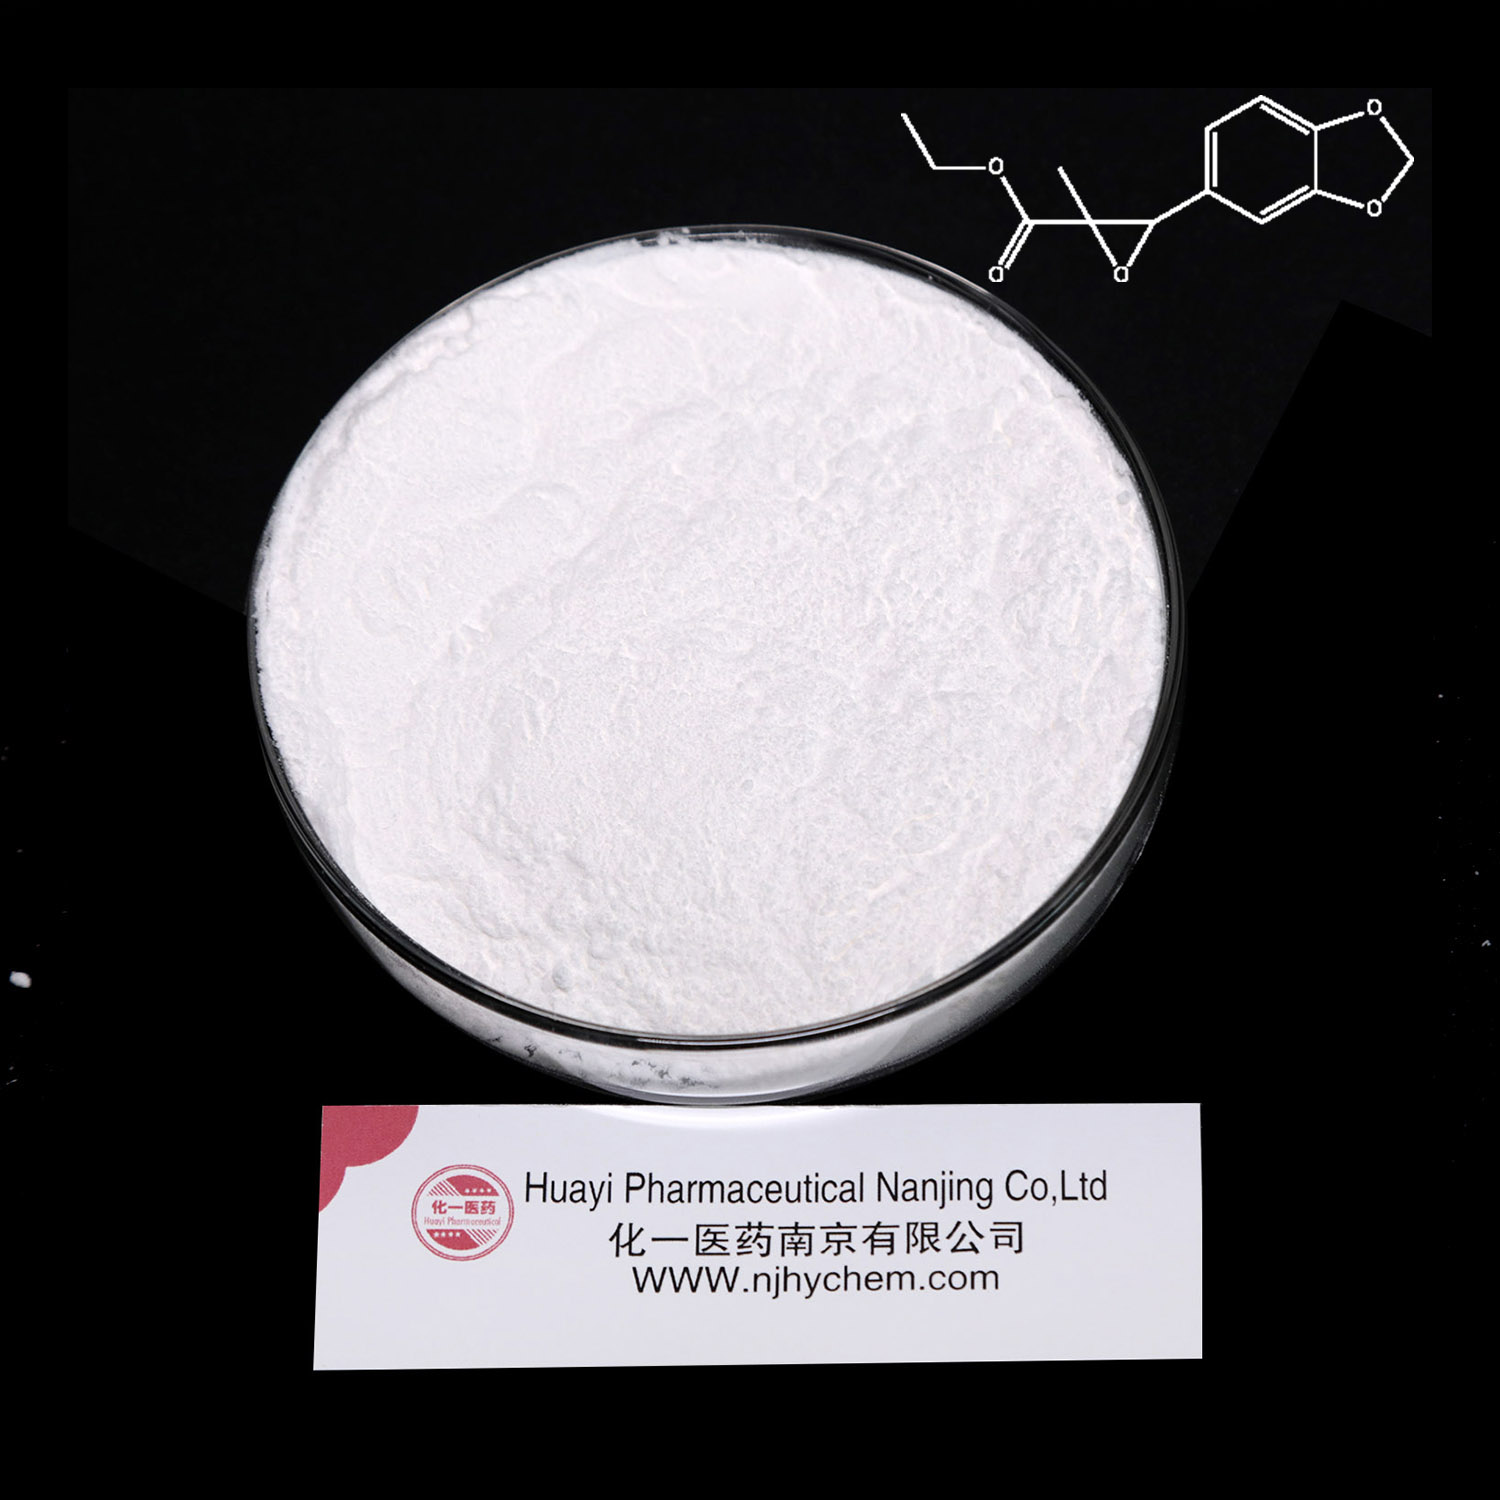 Pmk polvo de glicidato de metilo y nuevo aceite de etilo pmk Cas 28578-16-7 